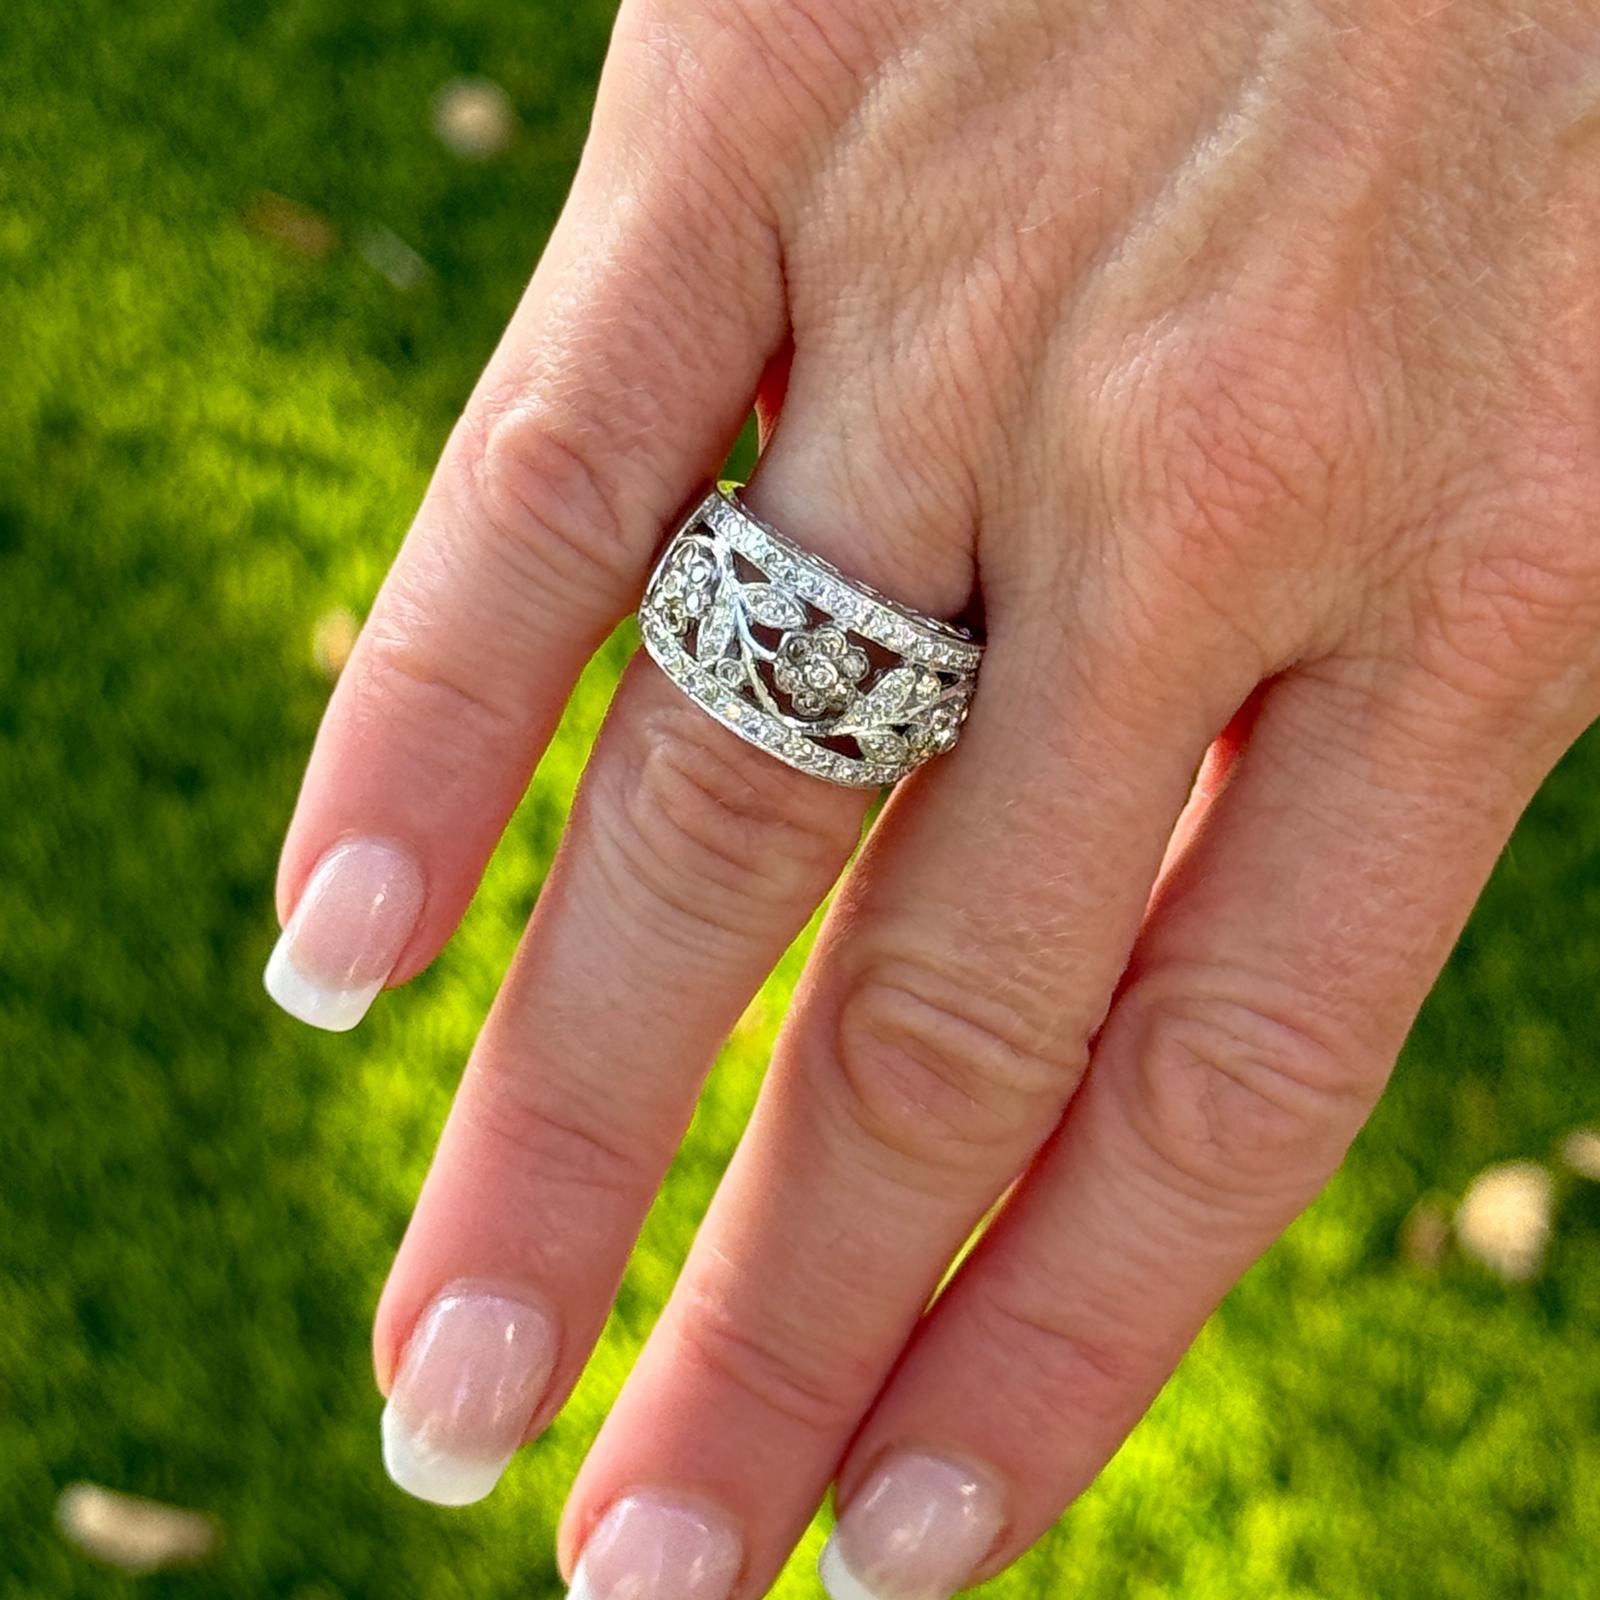 Cet anneau floral en diamant LeVian est un magnifique bijou moderne. Fabriquées en or blanc 14 carats, les fleurs ajoutent une touche fantaisiste et romantique au design, créant un look féminin et sophistiqué.Les diamants pèsent environ 0,75 carat